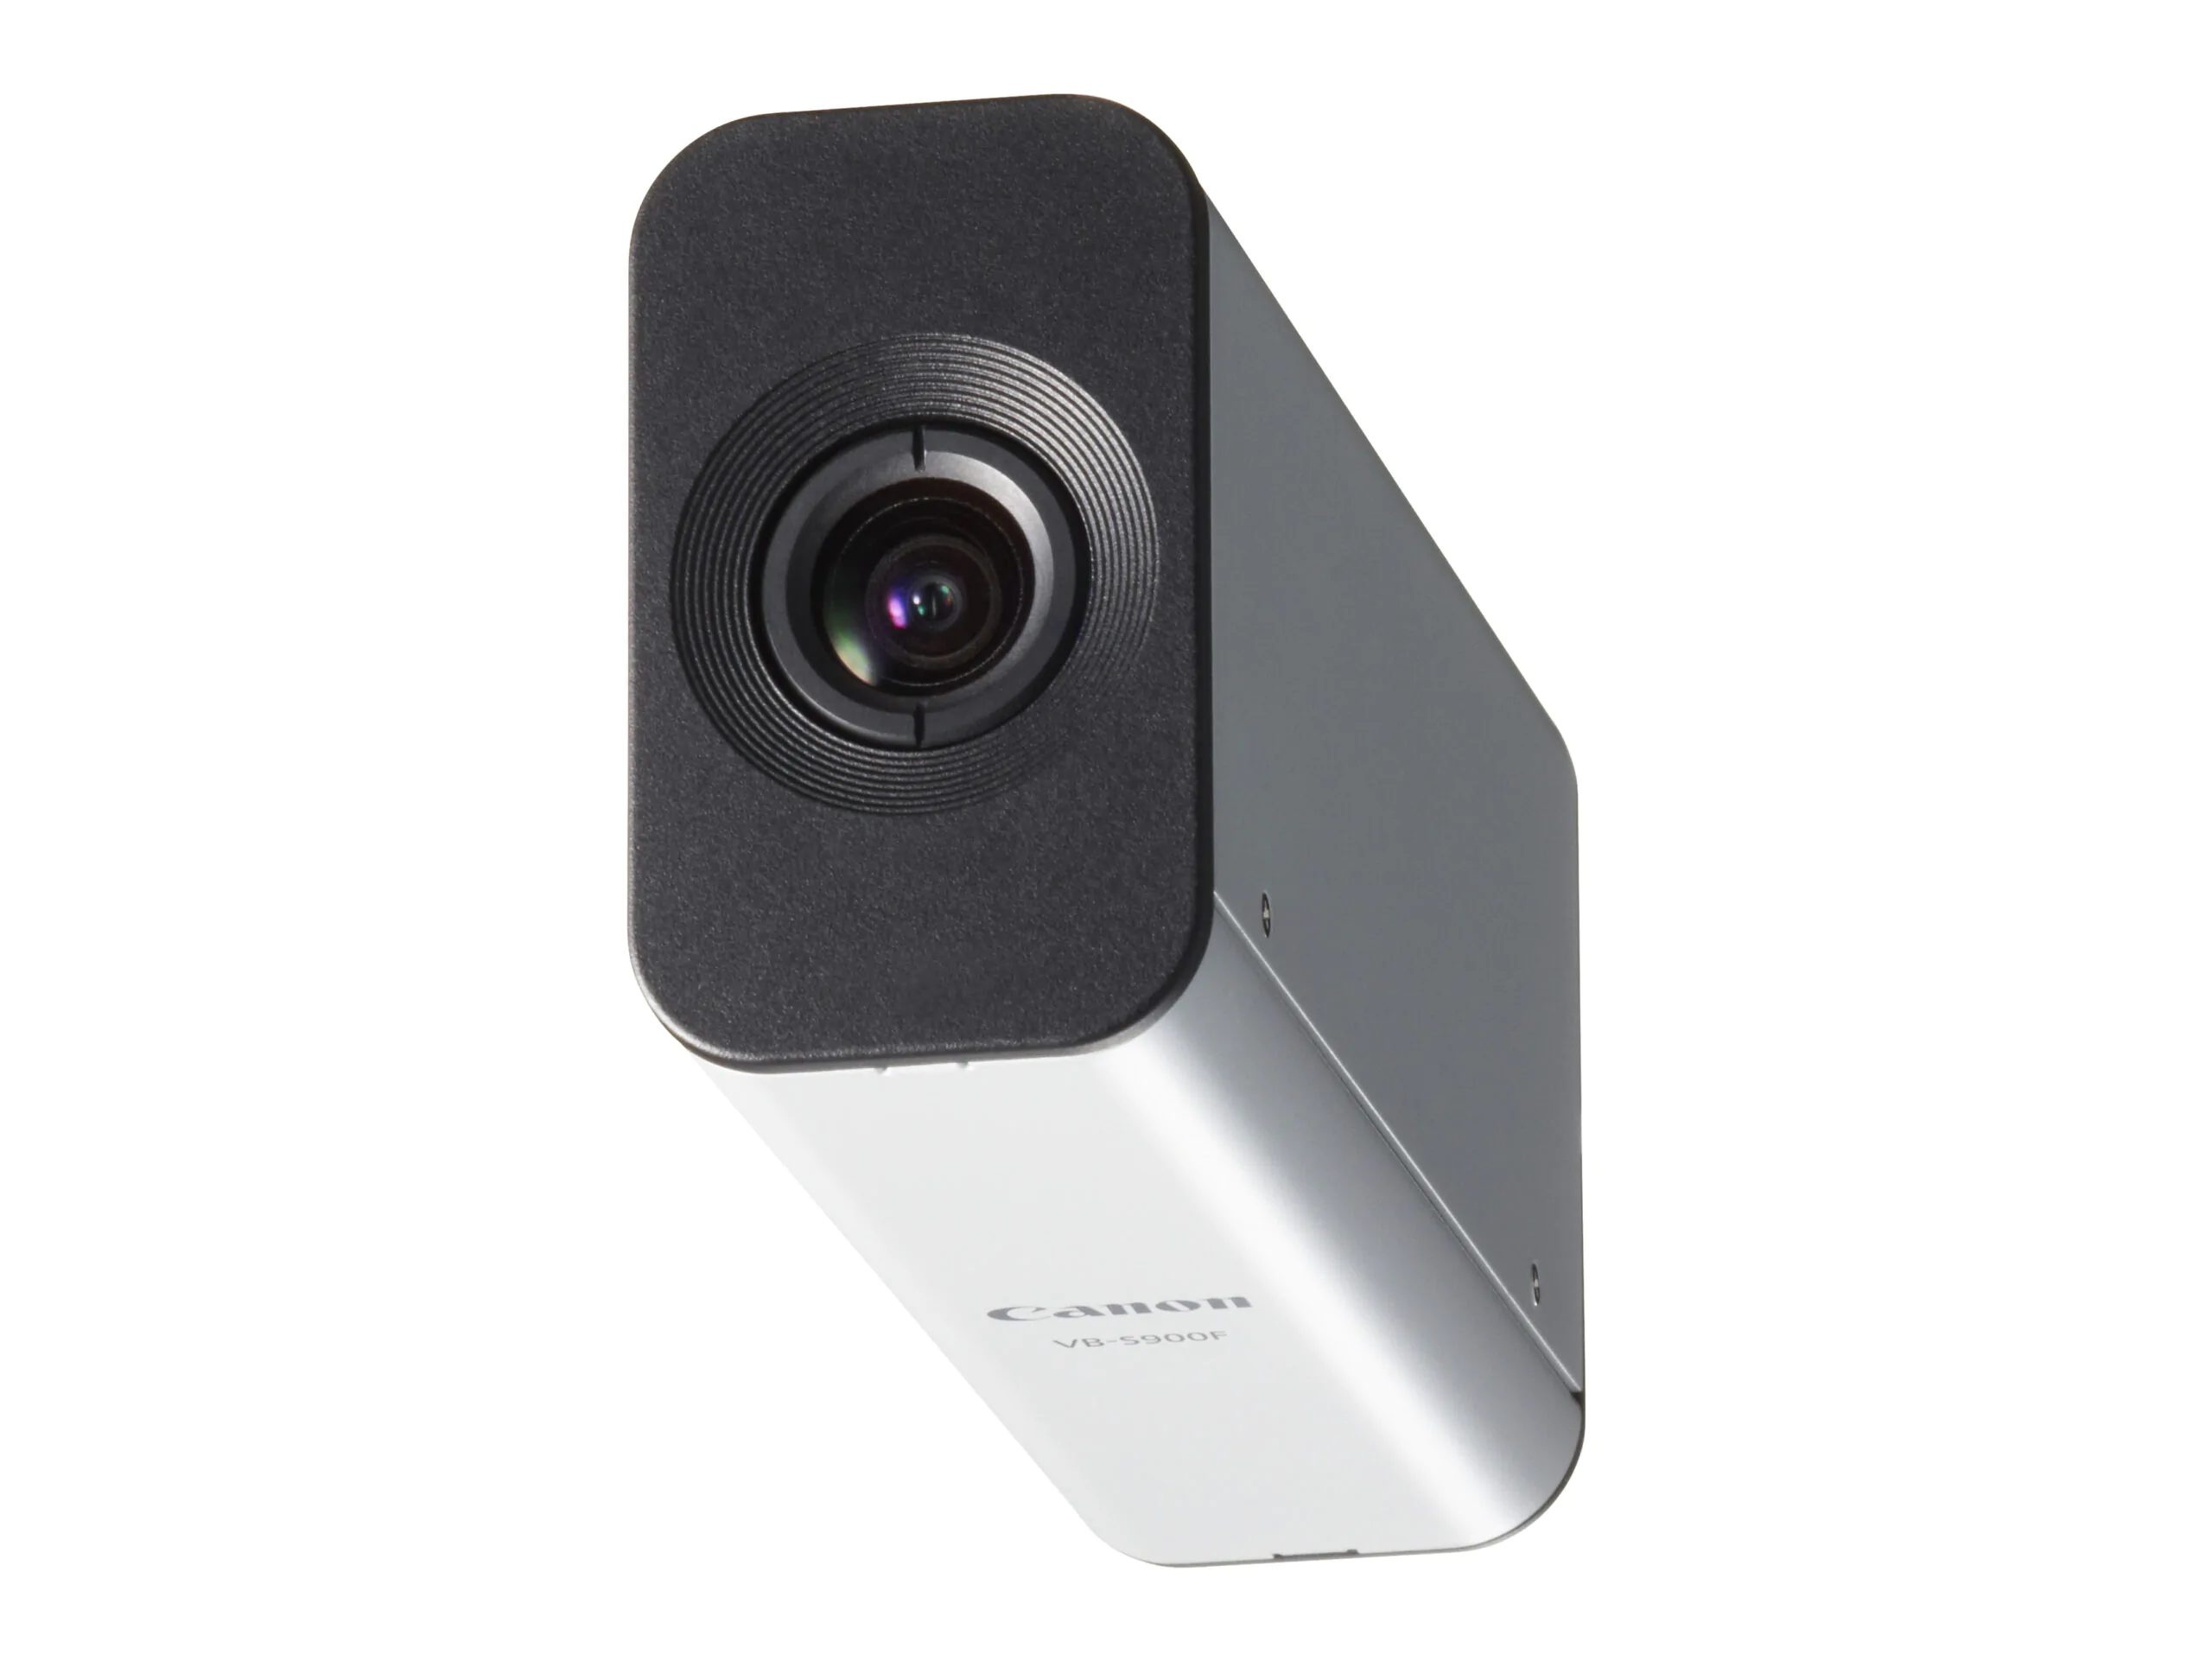 Canon VB S900F scaled | Network Camera | แคนนอน เผยทัพผลิตภัณฑ์ “กล้องวงจรปิด” โซลูชั่นแห่งโลกยุคใหม่ พร้อมเปิดตัวบริการ “One Stop Service Solution” ให้คำปรึกษาโดยผู้เชี่ยวชาญ